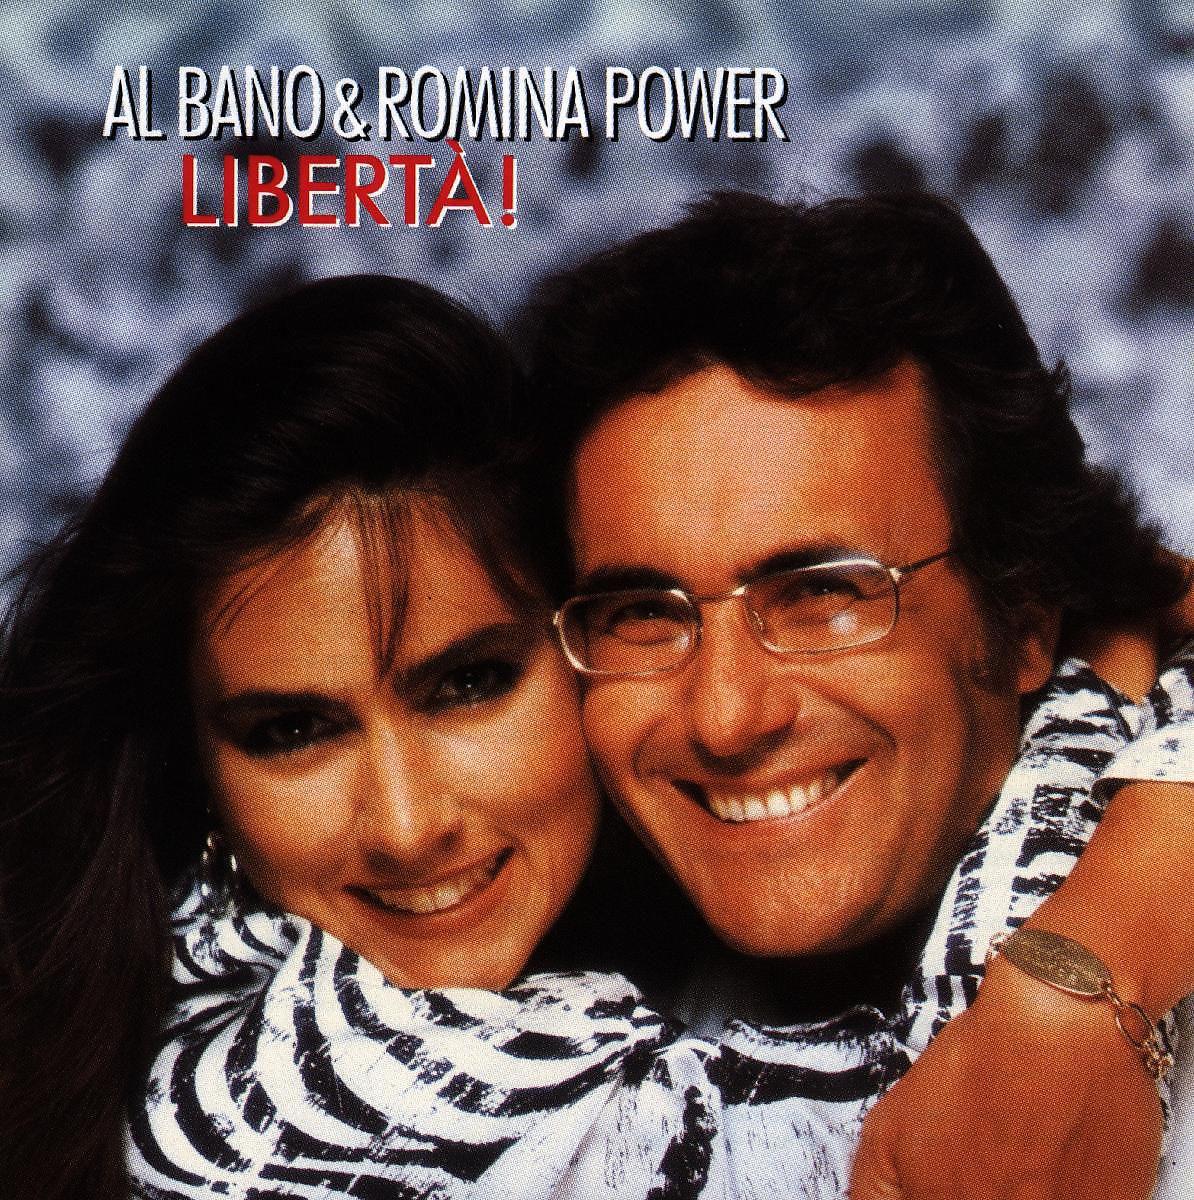 Слушать аль бано лучшее. Аль Бано и Ромина Пауэр. Аль Бано и Ромина Liberta. Al bano & Romina Power Liberta 1987 LP. Аль Бано и Ромина - Либерта.